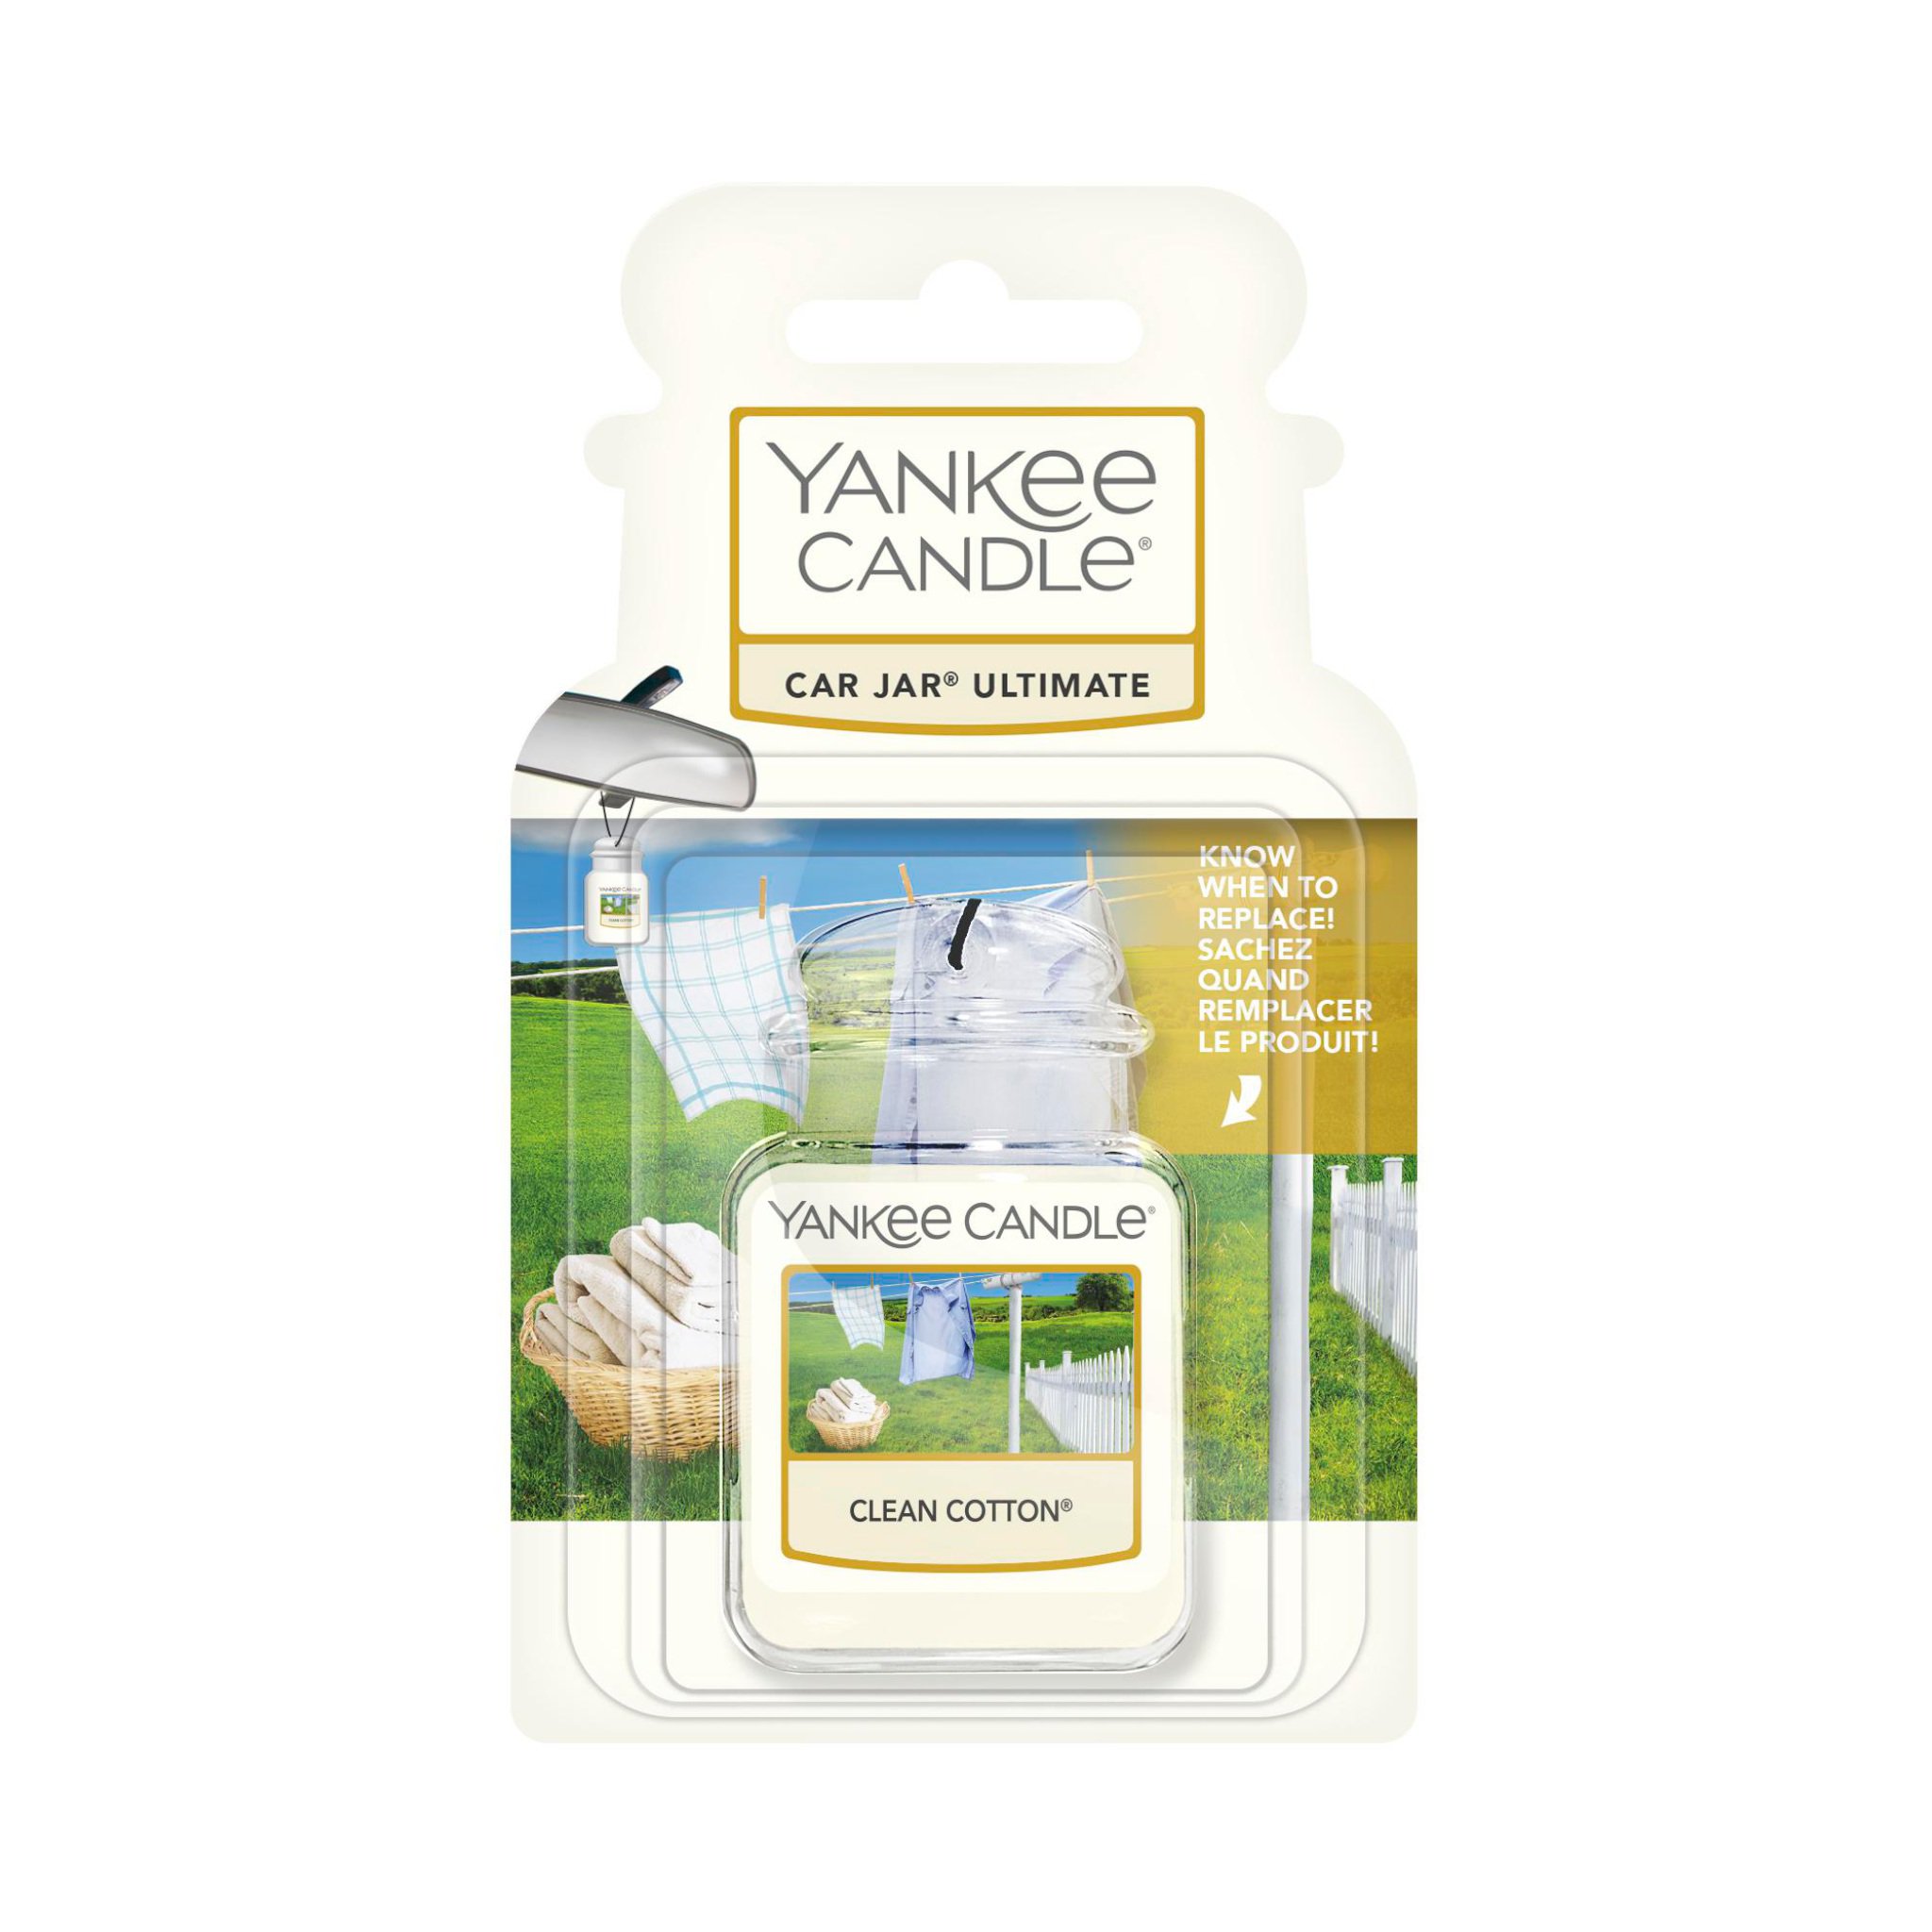 Yankee Candle parfum pour voiture Car Jar Ultimate, Clean cotton